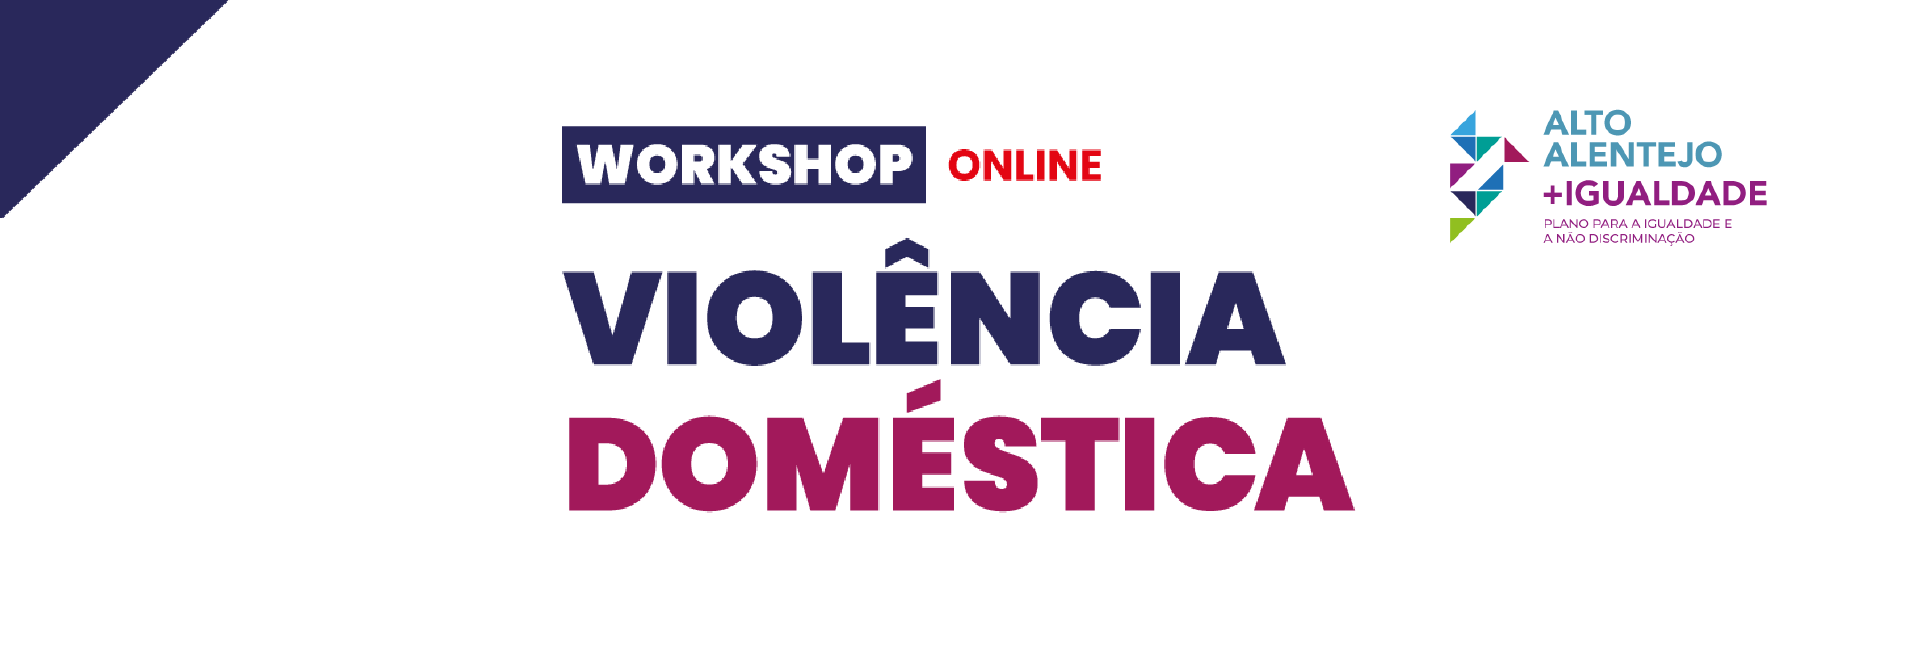 Workshop Violência Doméstica